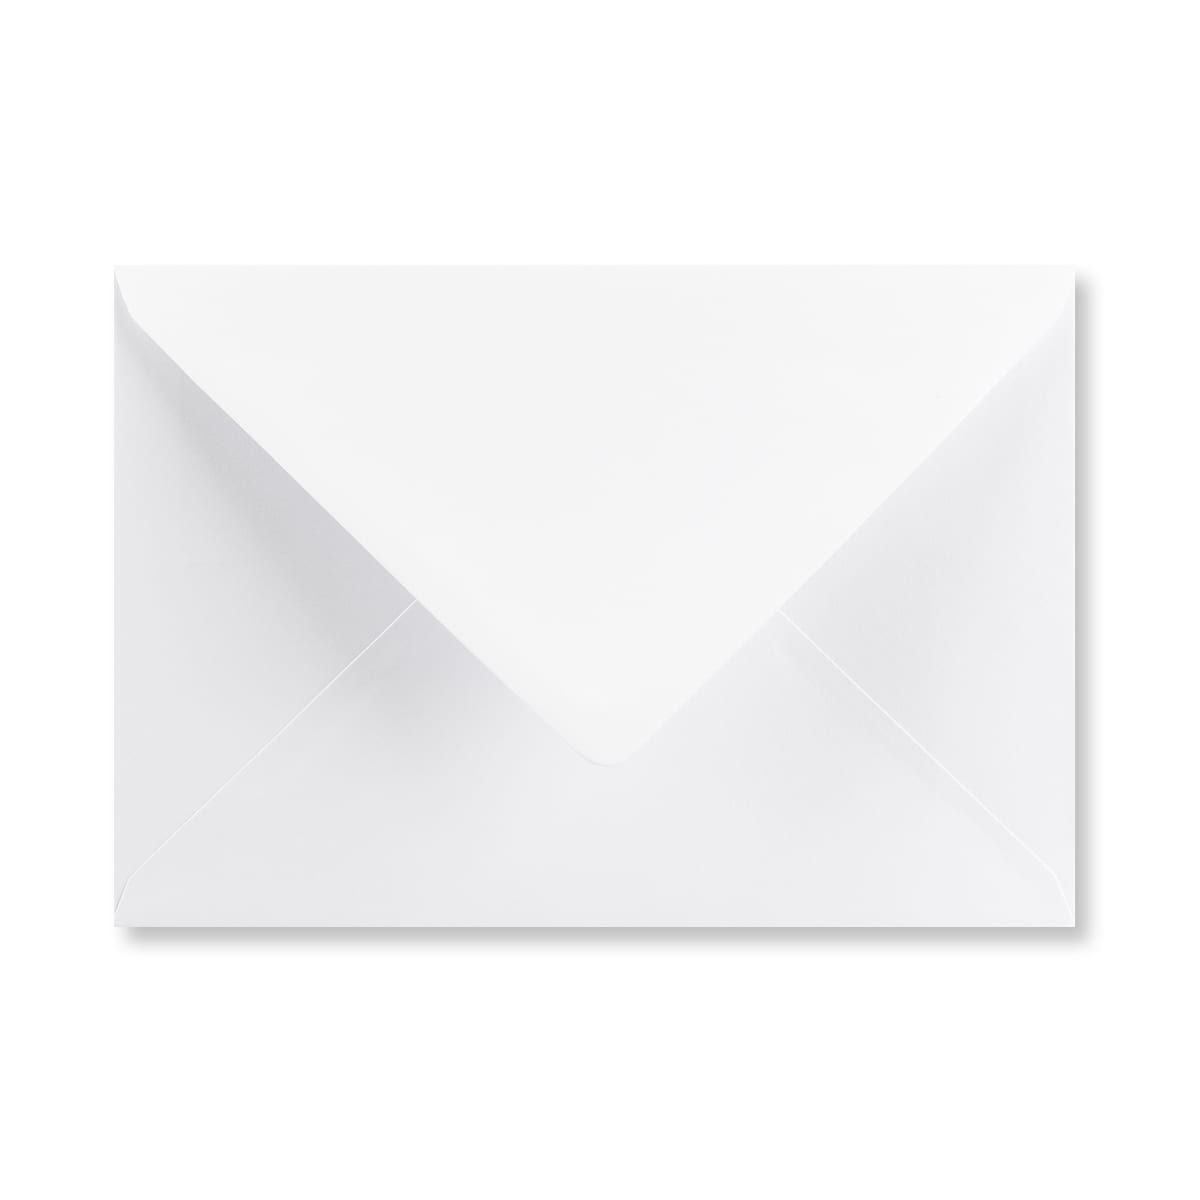 White 92 x 135mm Envelopes 100gsm